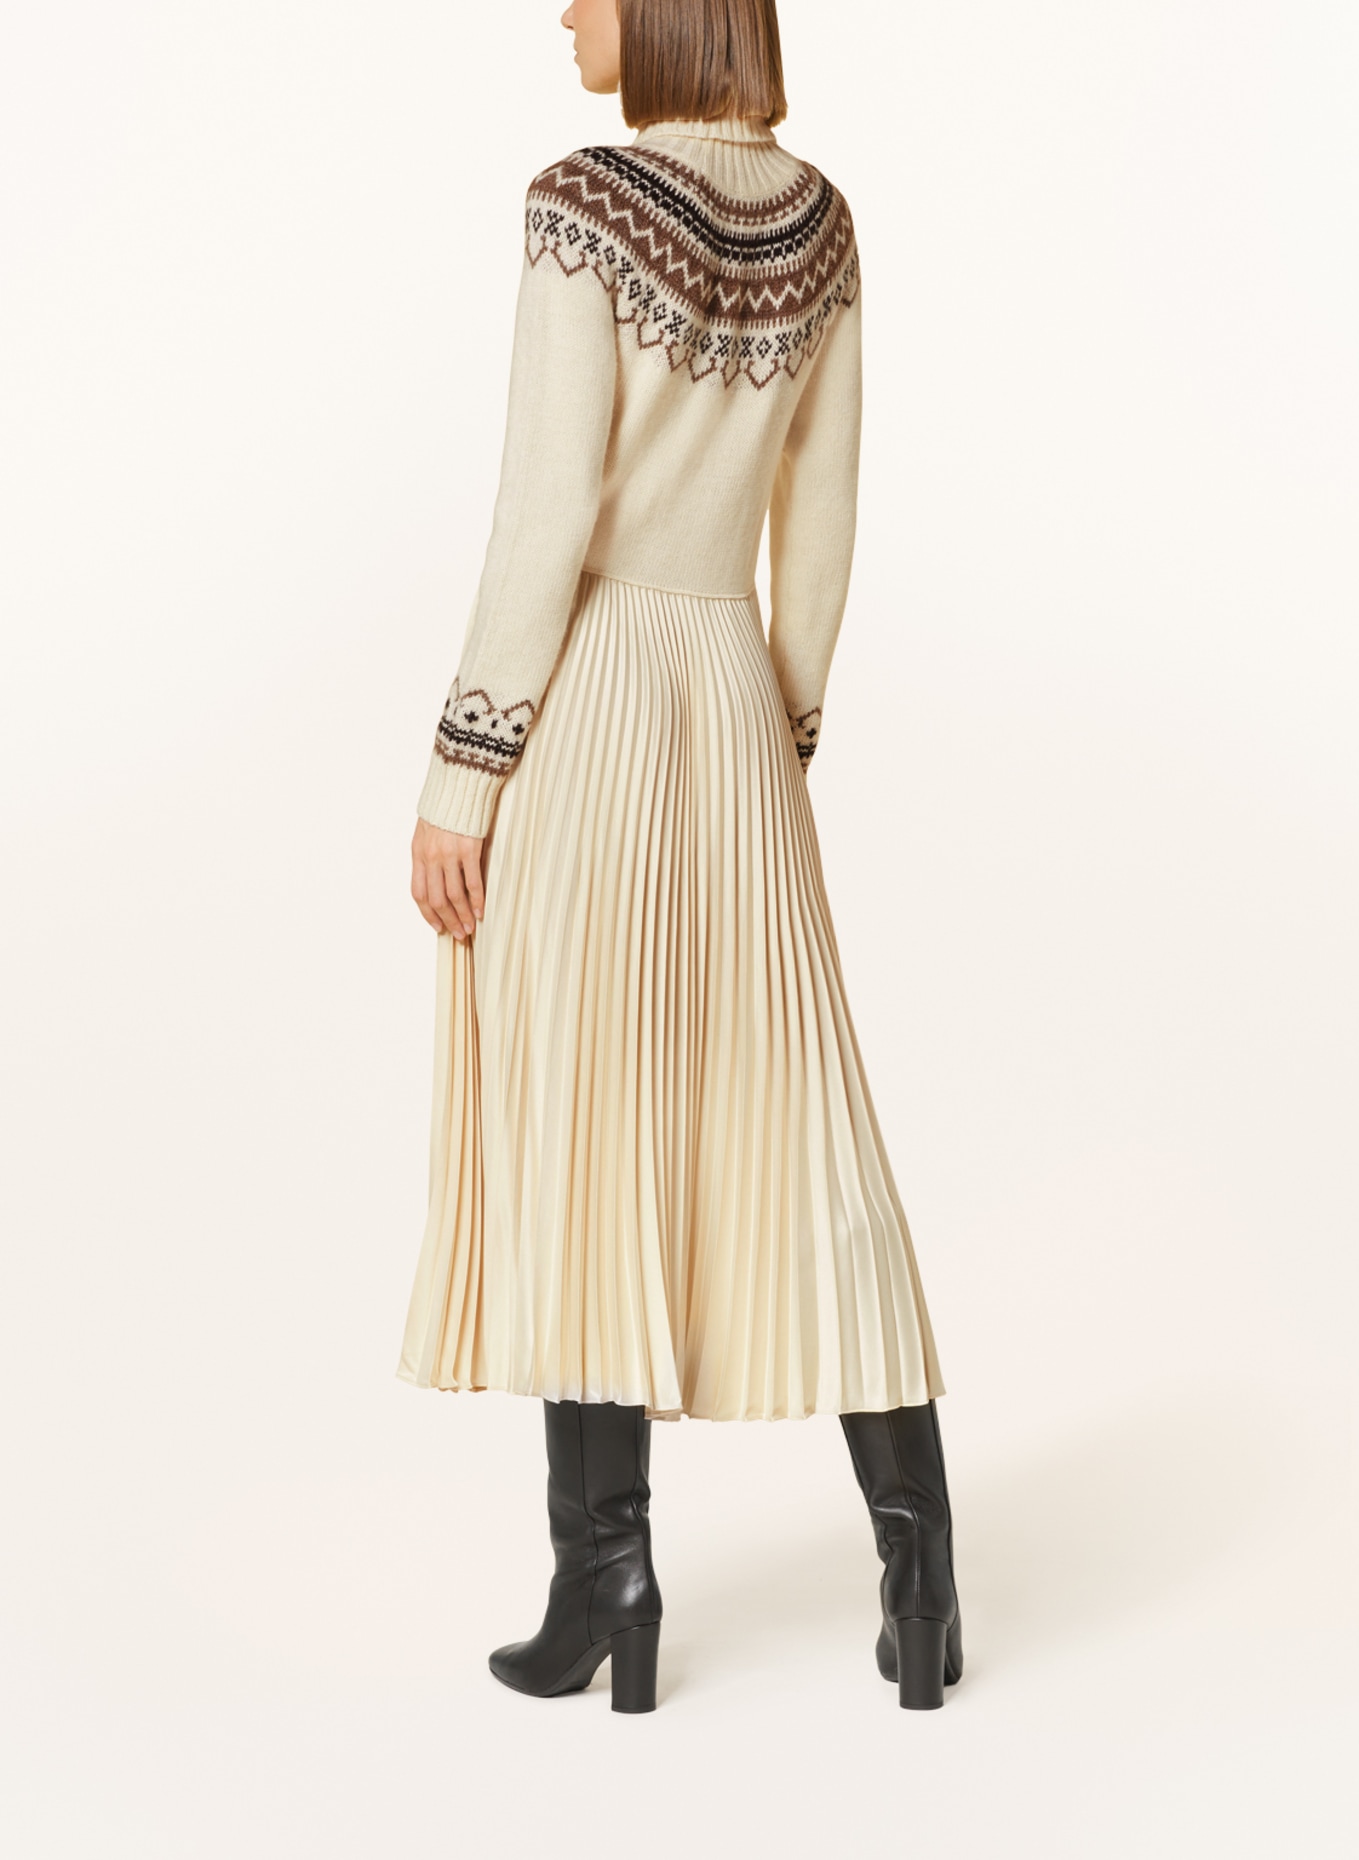 POLO RALPH LAUREN Dress in mixed materials with pleats, Color: ECRU/ BEIGE/ DARK BROWN (Image 3)